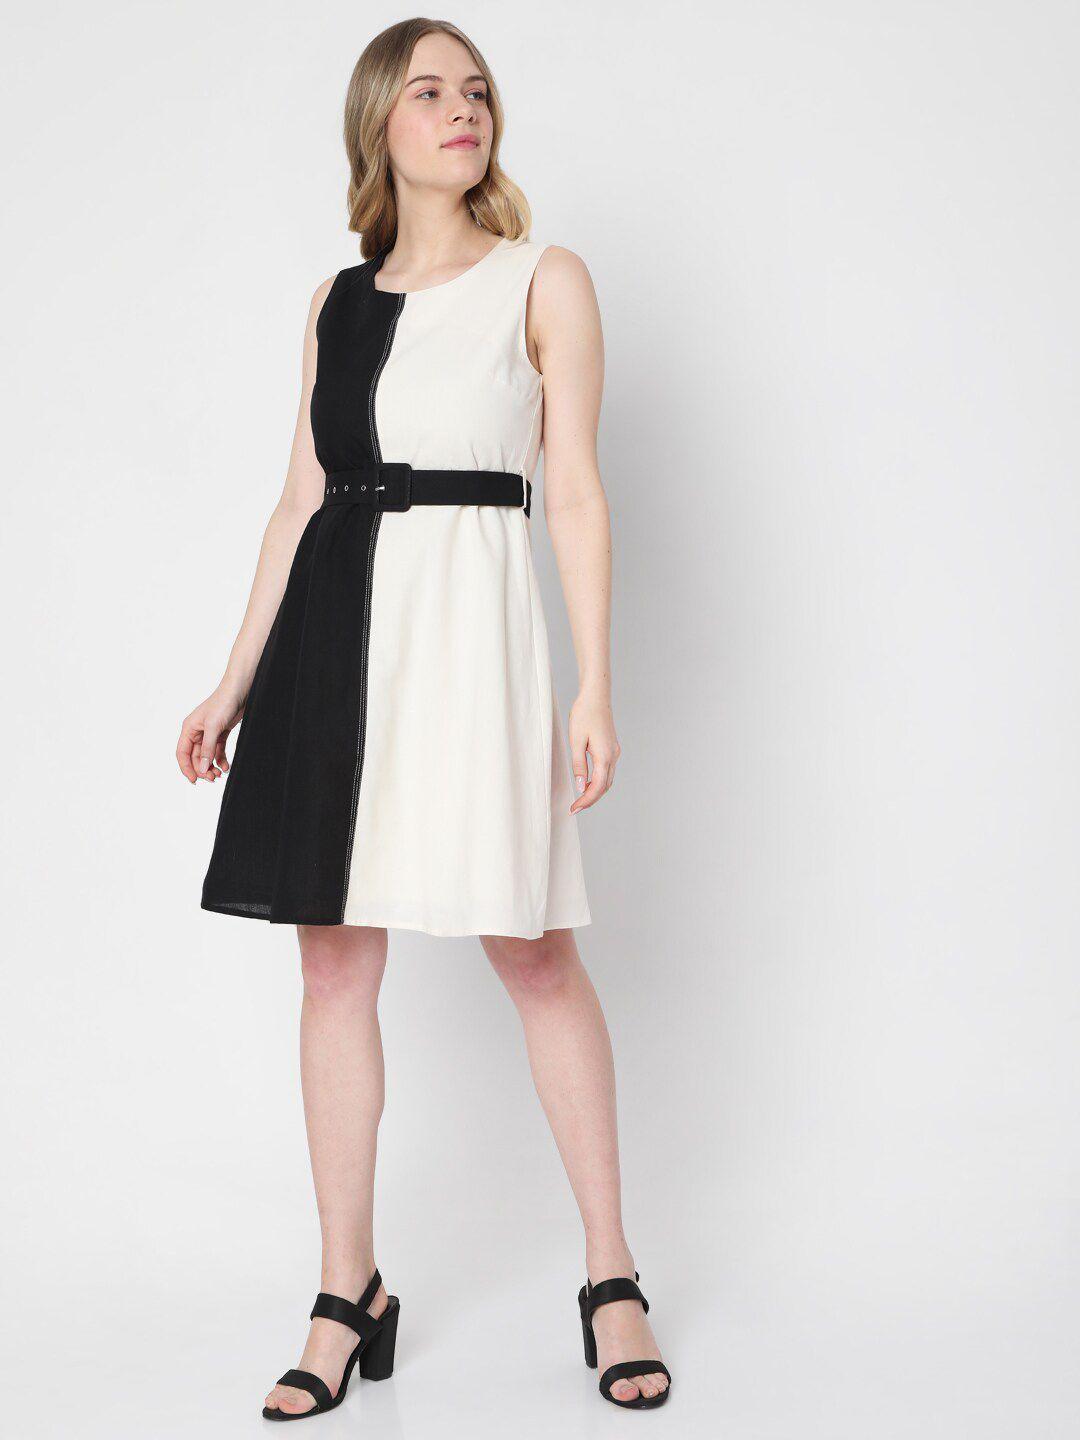 vero moda white & black colourblocked fit & flare cotton dress